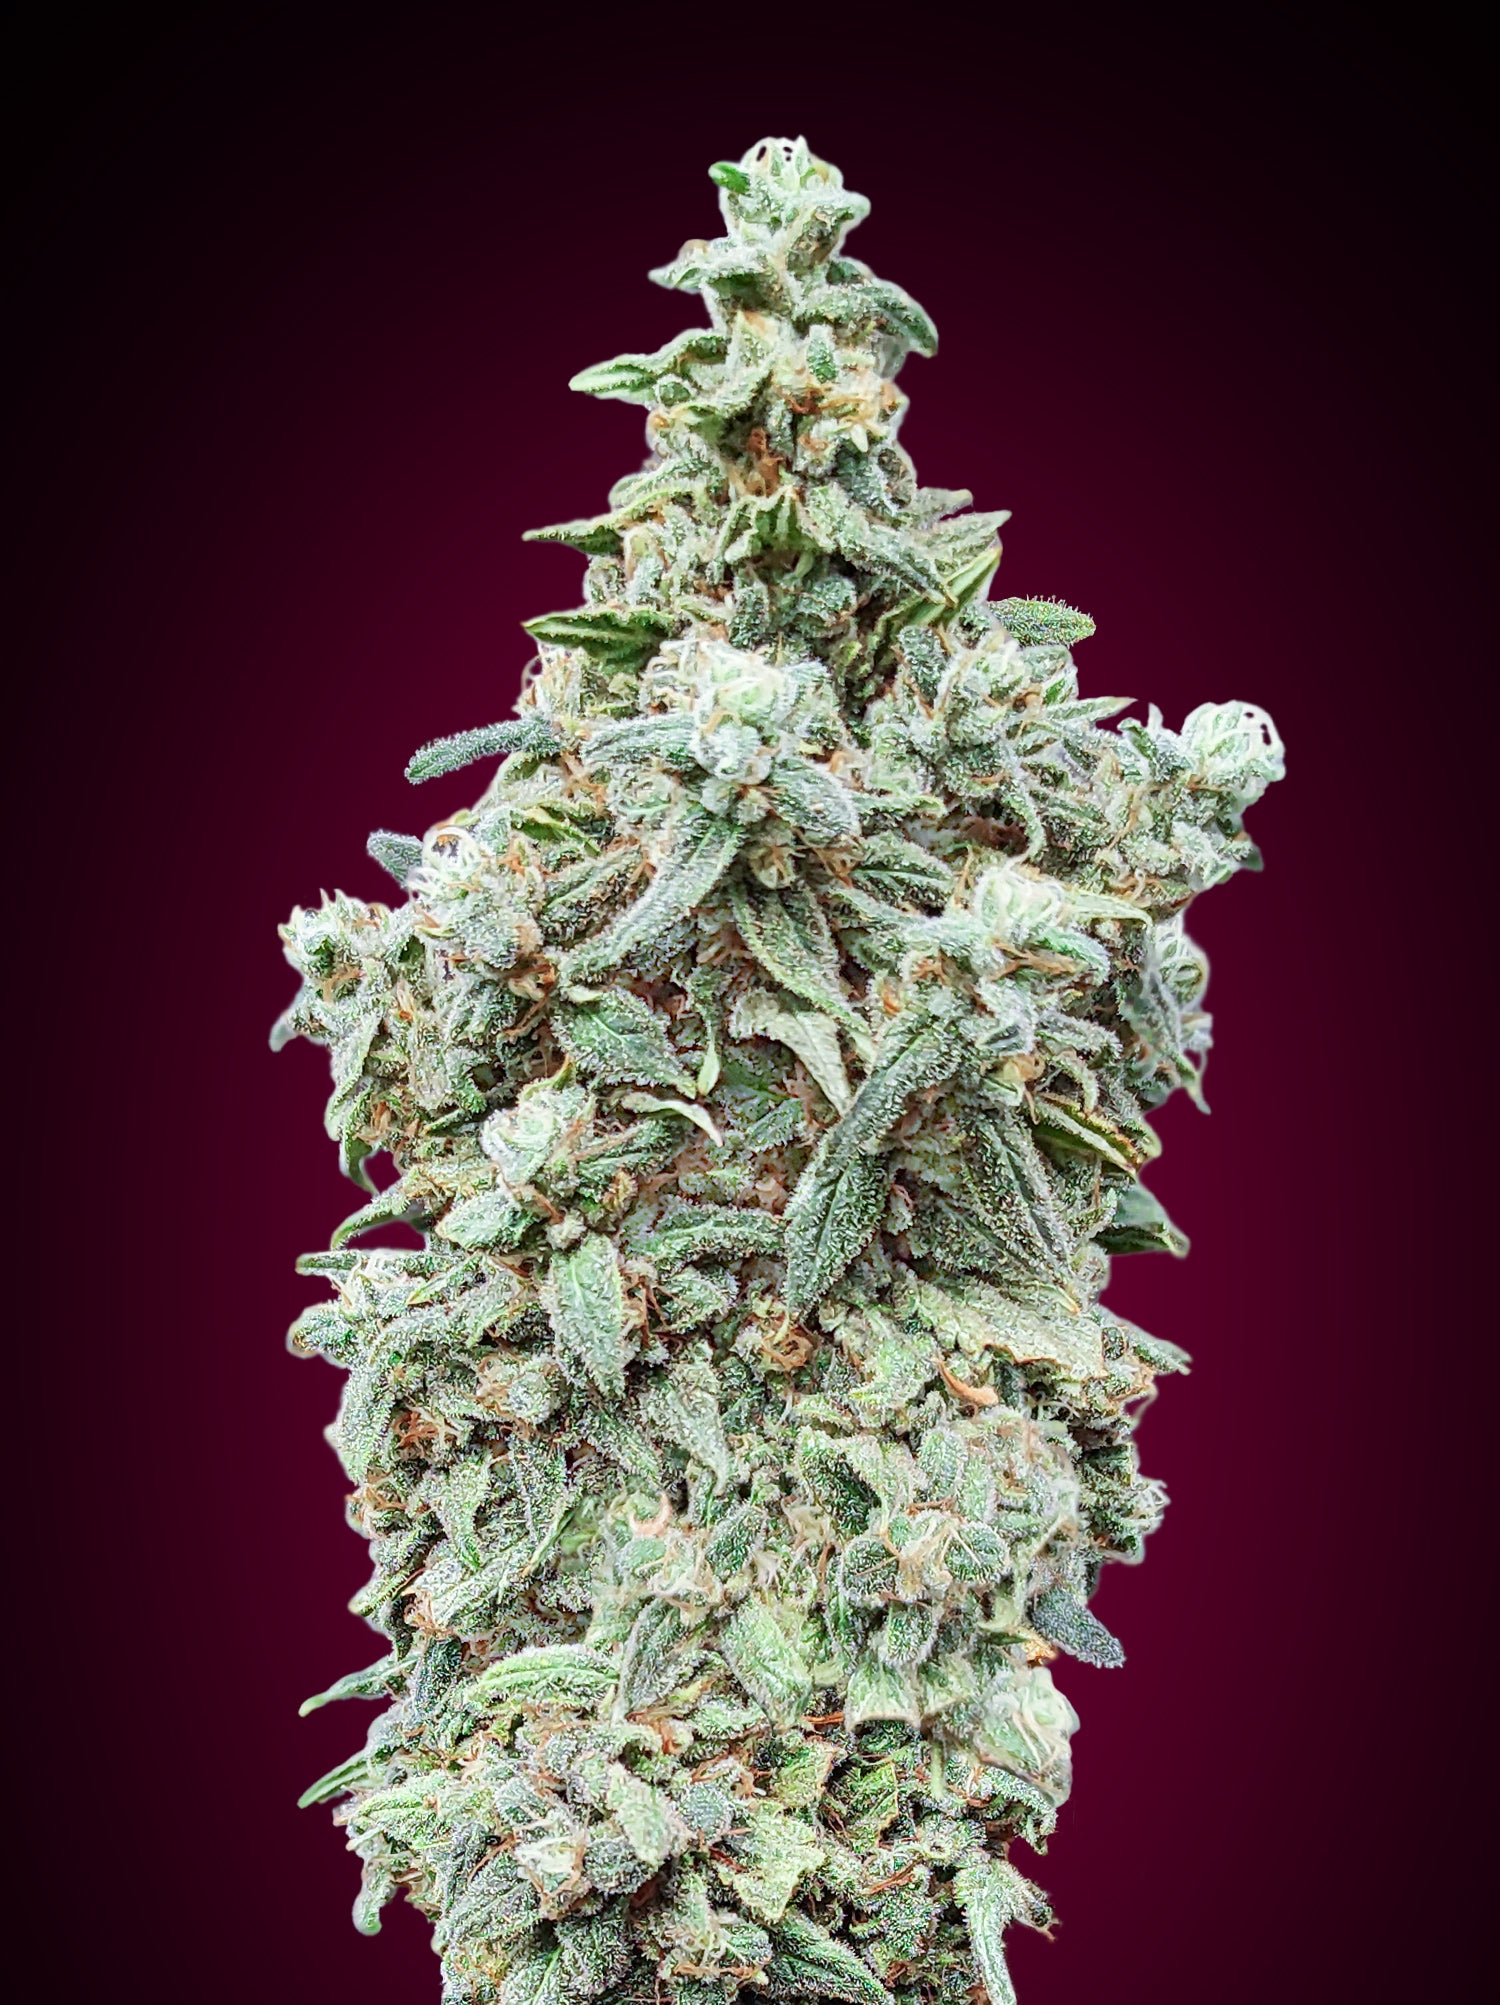 a close up of a marijuana plant on a purple background